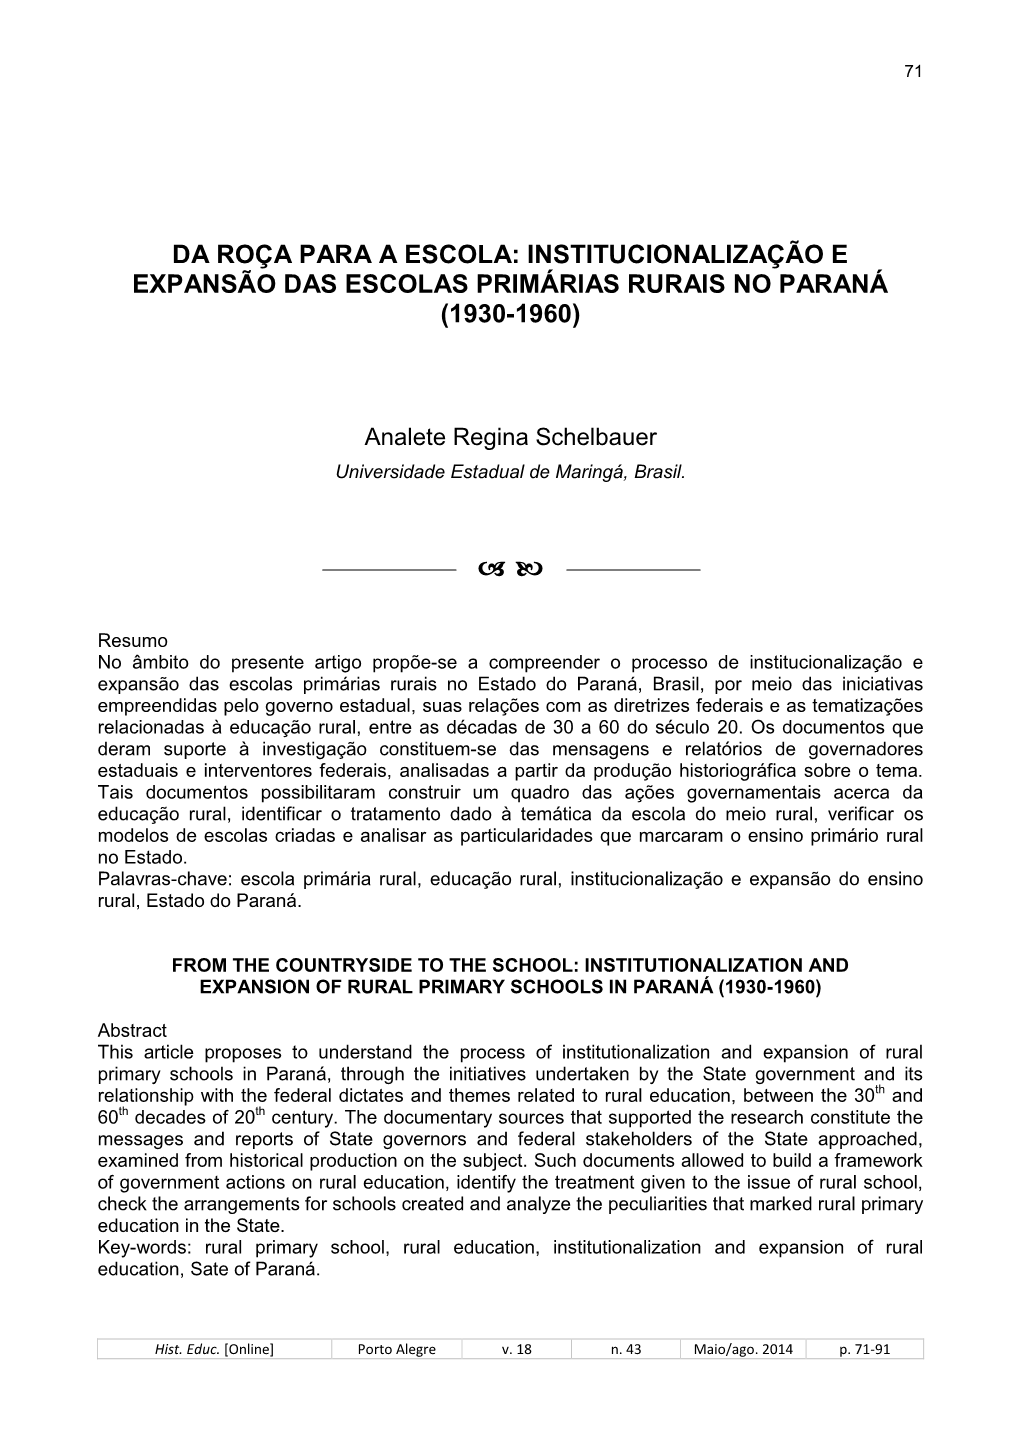 Institucionalização E Expansão Das Escolas Primárias Rurais No Paraná (1930-1960)